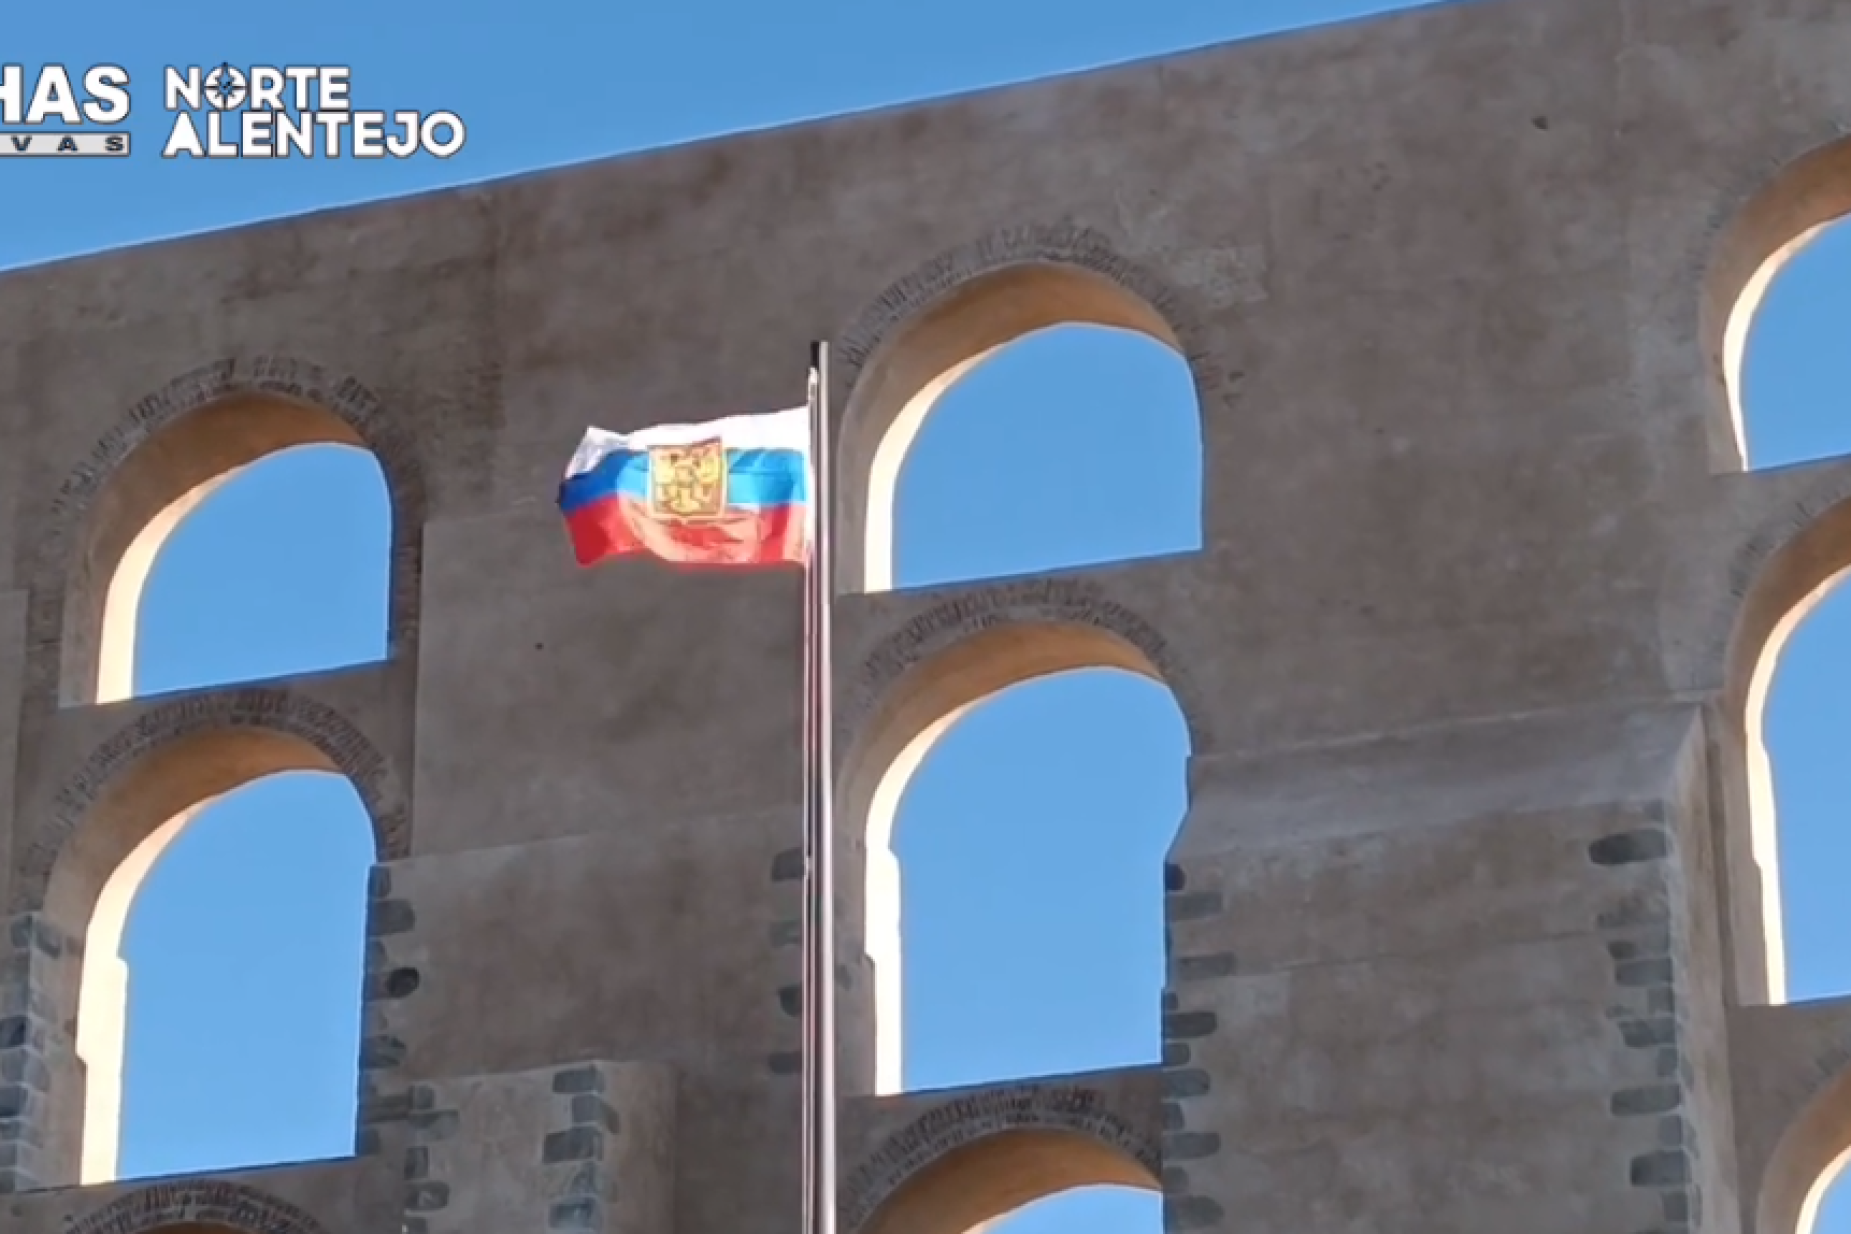 Bandeira Portuguesa foi trocada por Bandeira de Federação Russa em